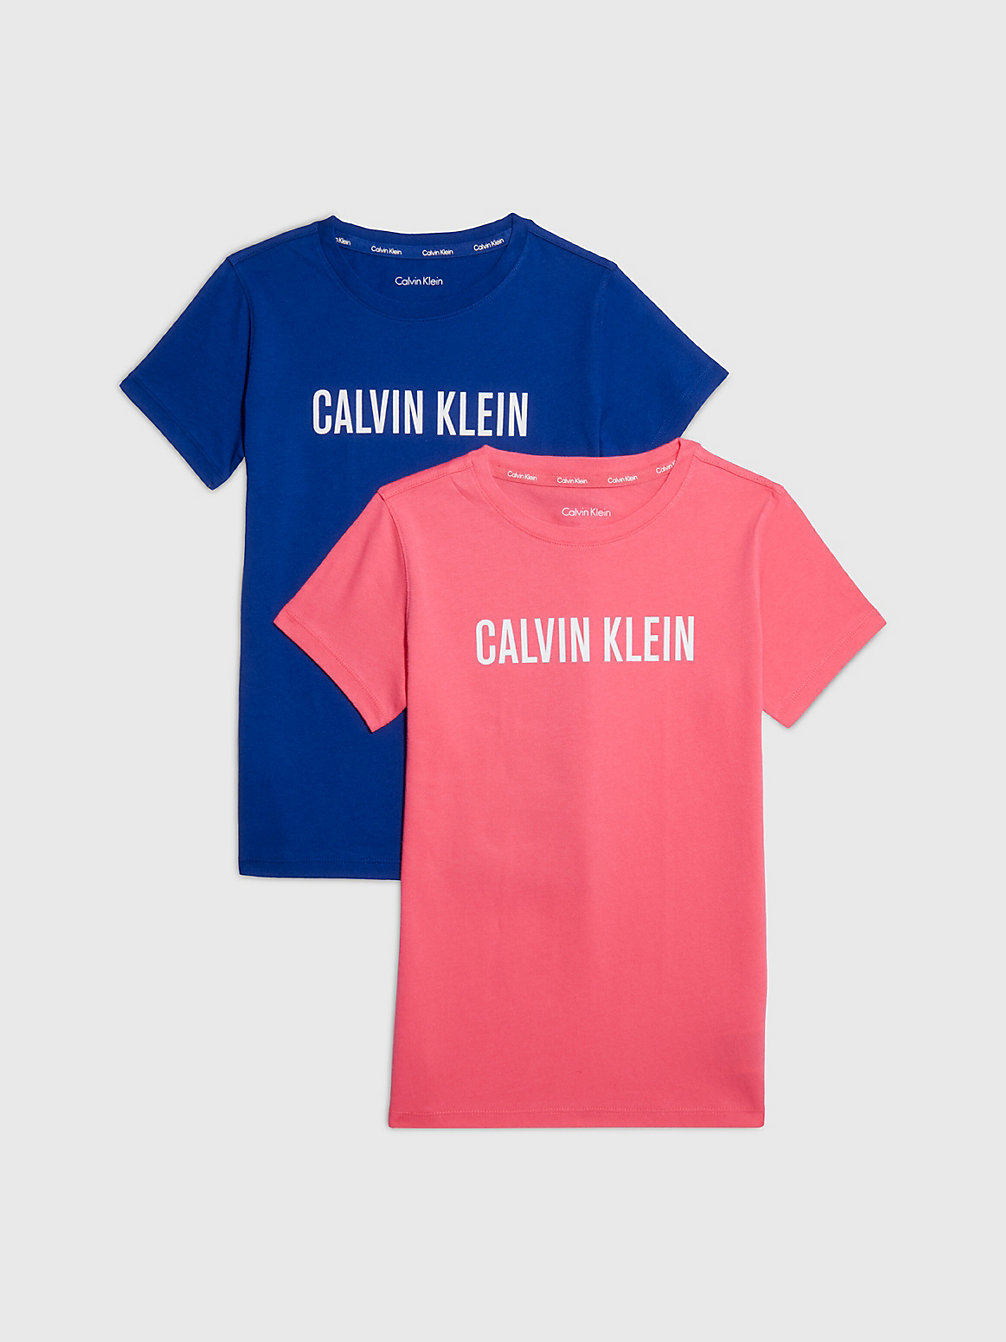 PINKFLASH/BOLDBLUE > Zestaw 2 Par T-Shirtów - Intense Power > undefined girls - Calvin Klein